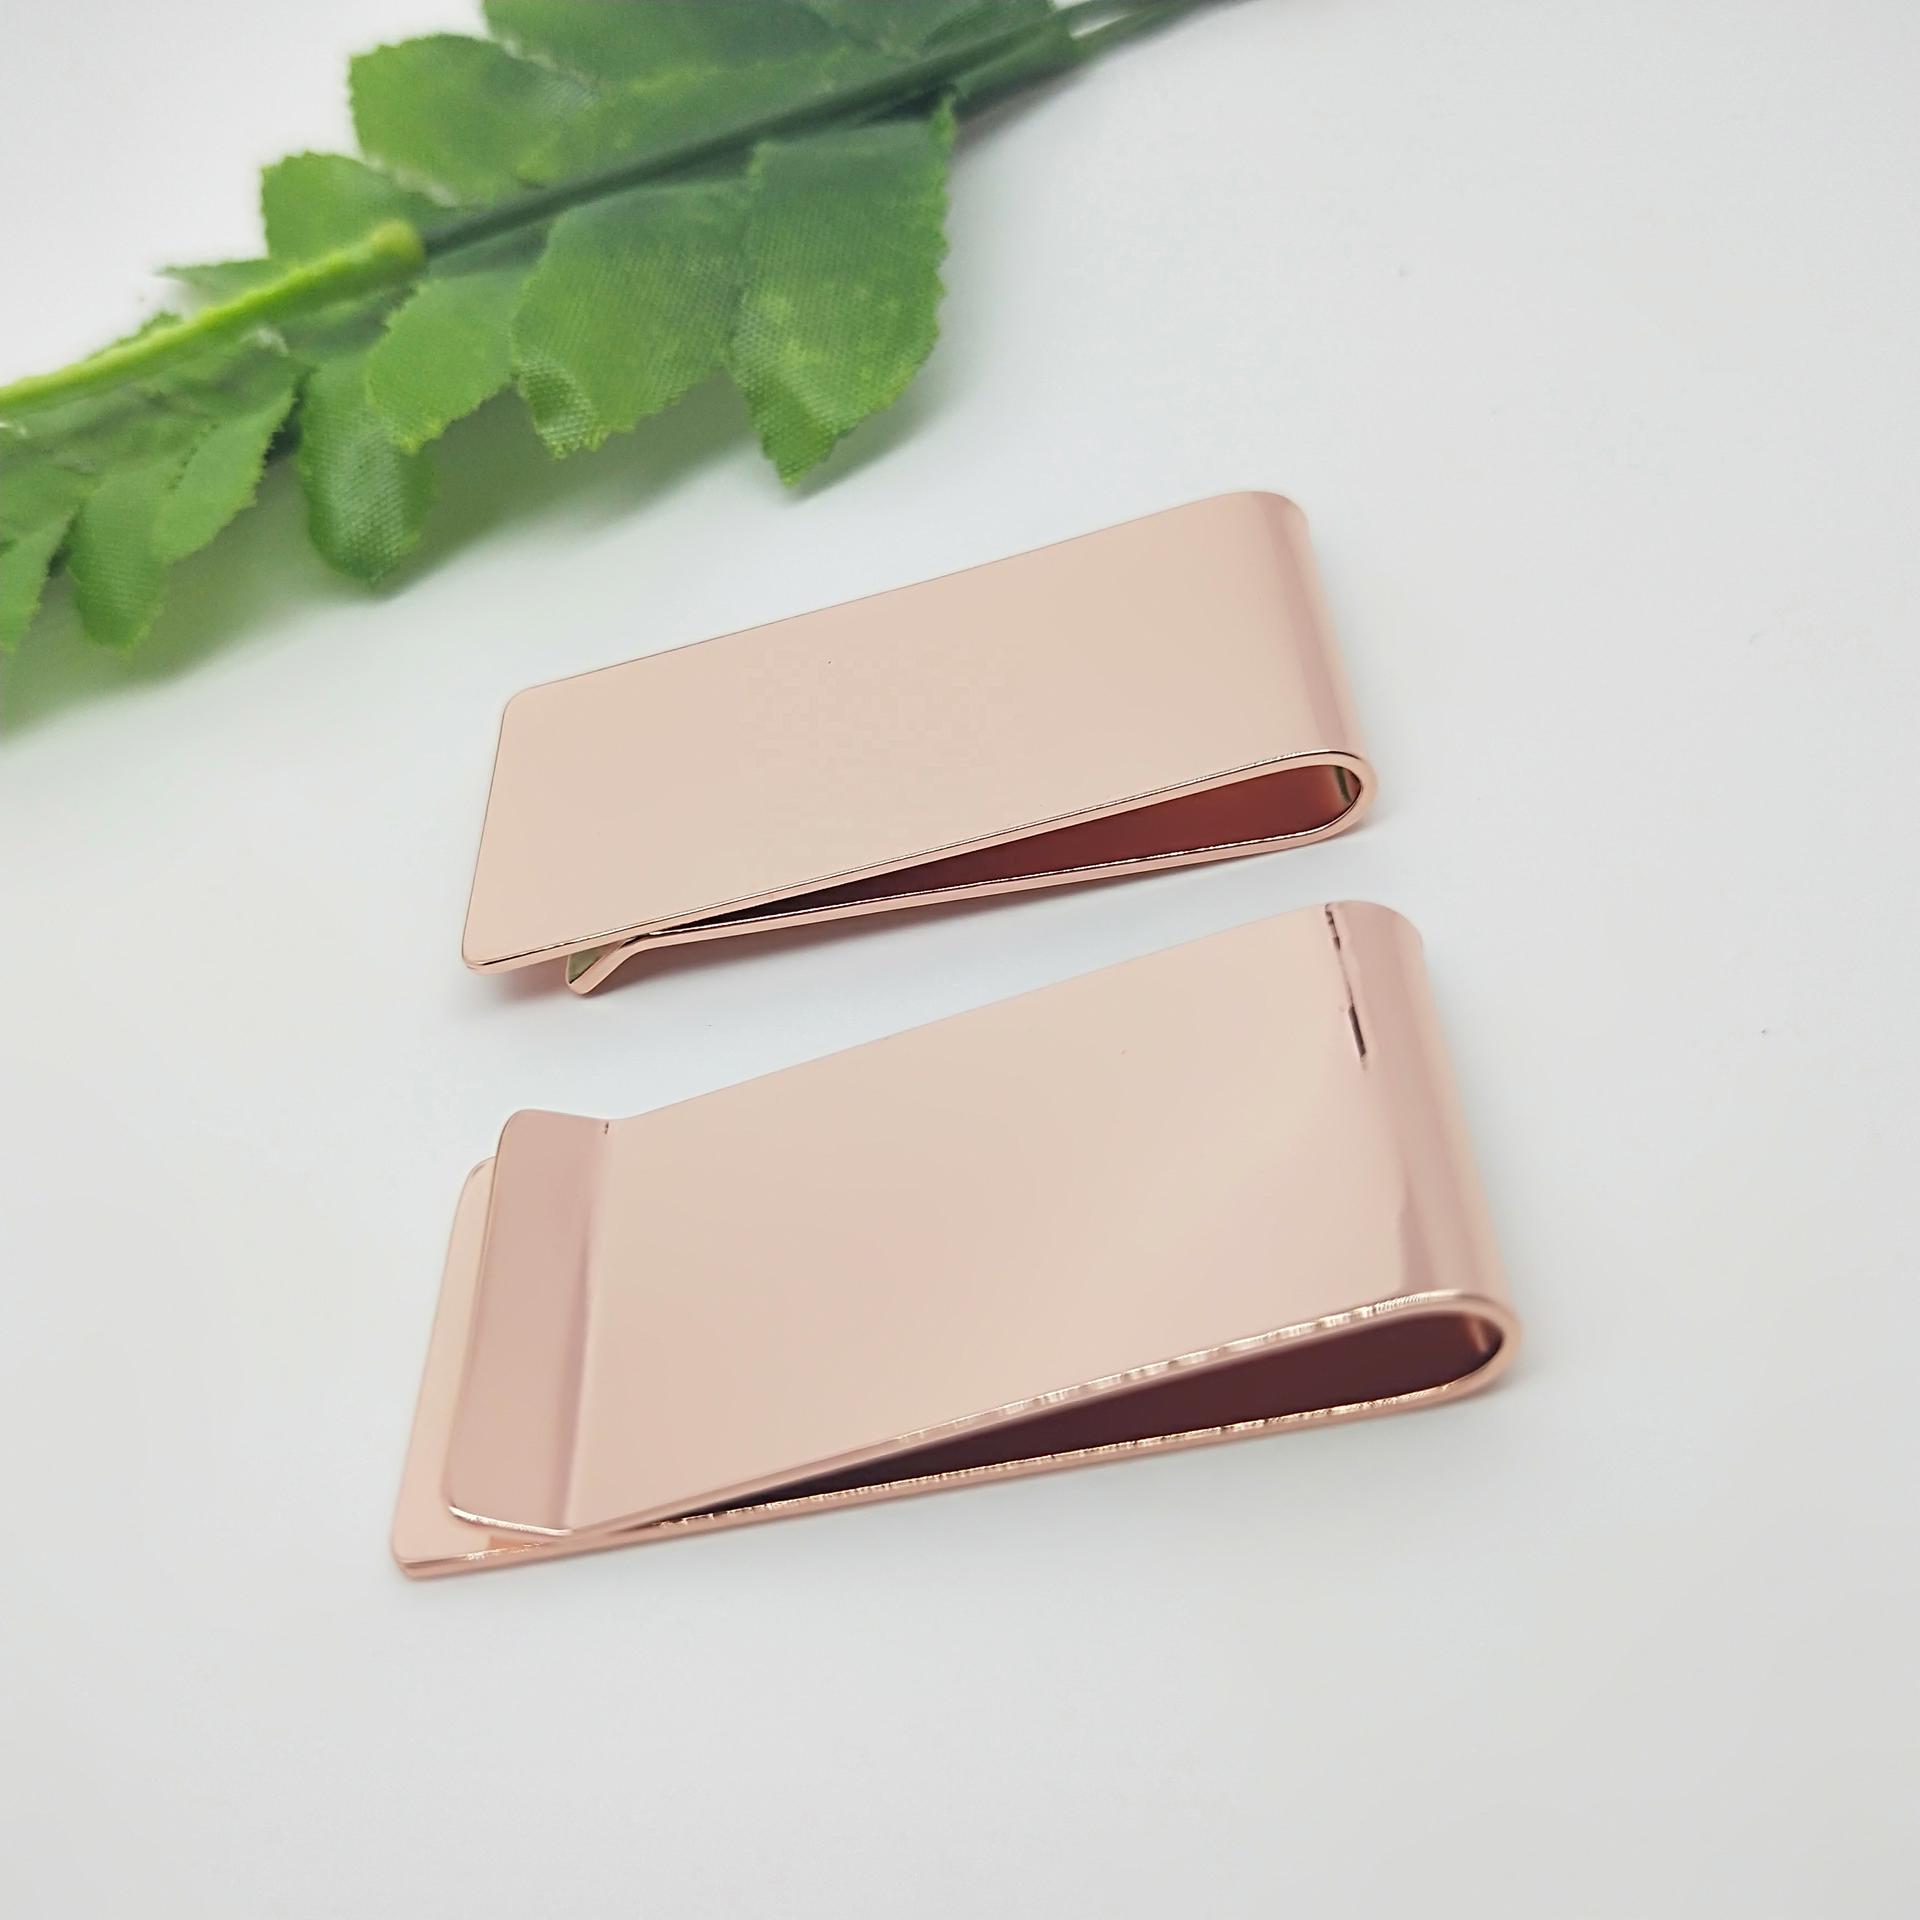 Bulk quality polishing copper blank wallet money clip for men